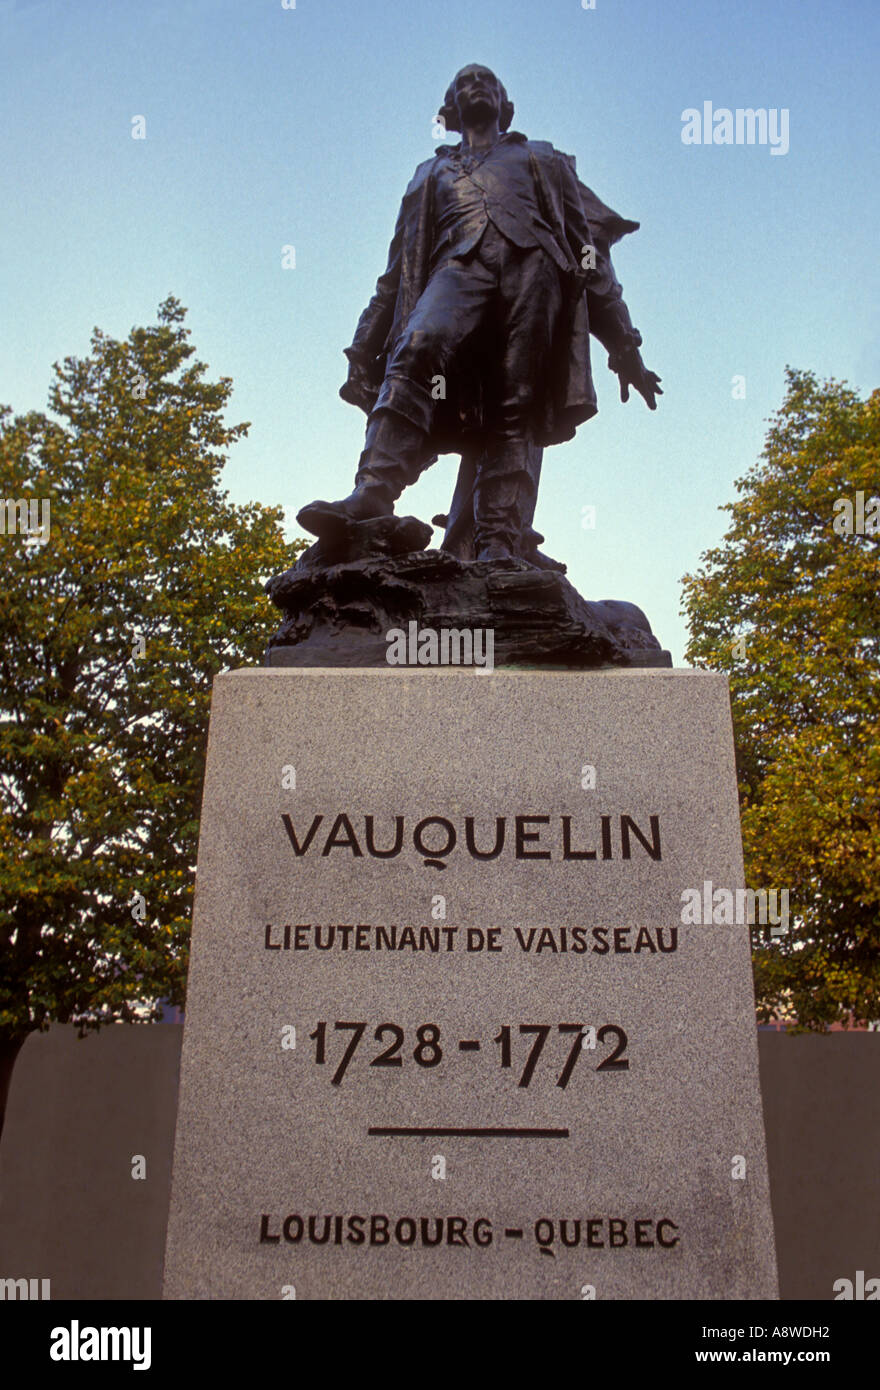 bronze statue of Jean Vauquelin, bronze statue, Jean Vauquelin, Place Vauquelin, city of Montreal, Montreal, Quebec Province, Canada, North America Stock Photo